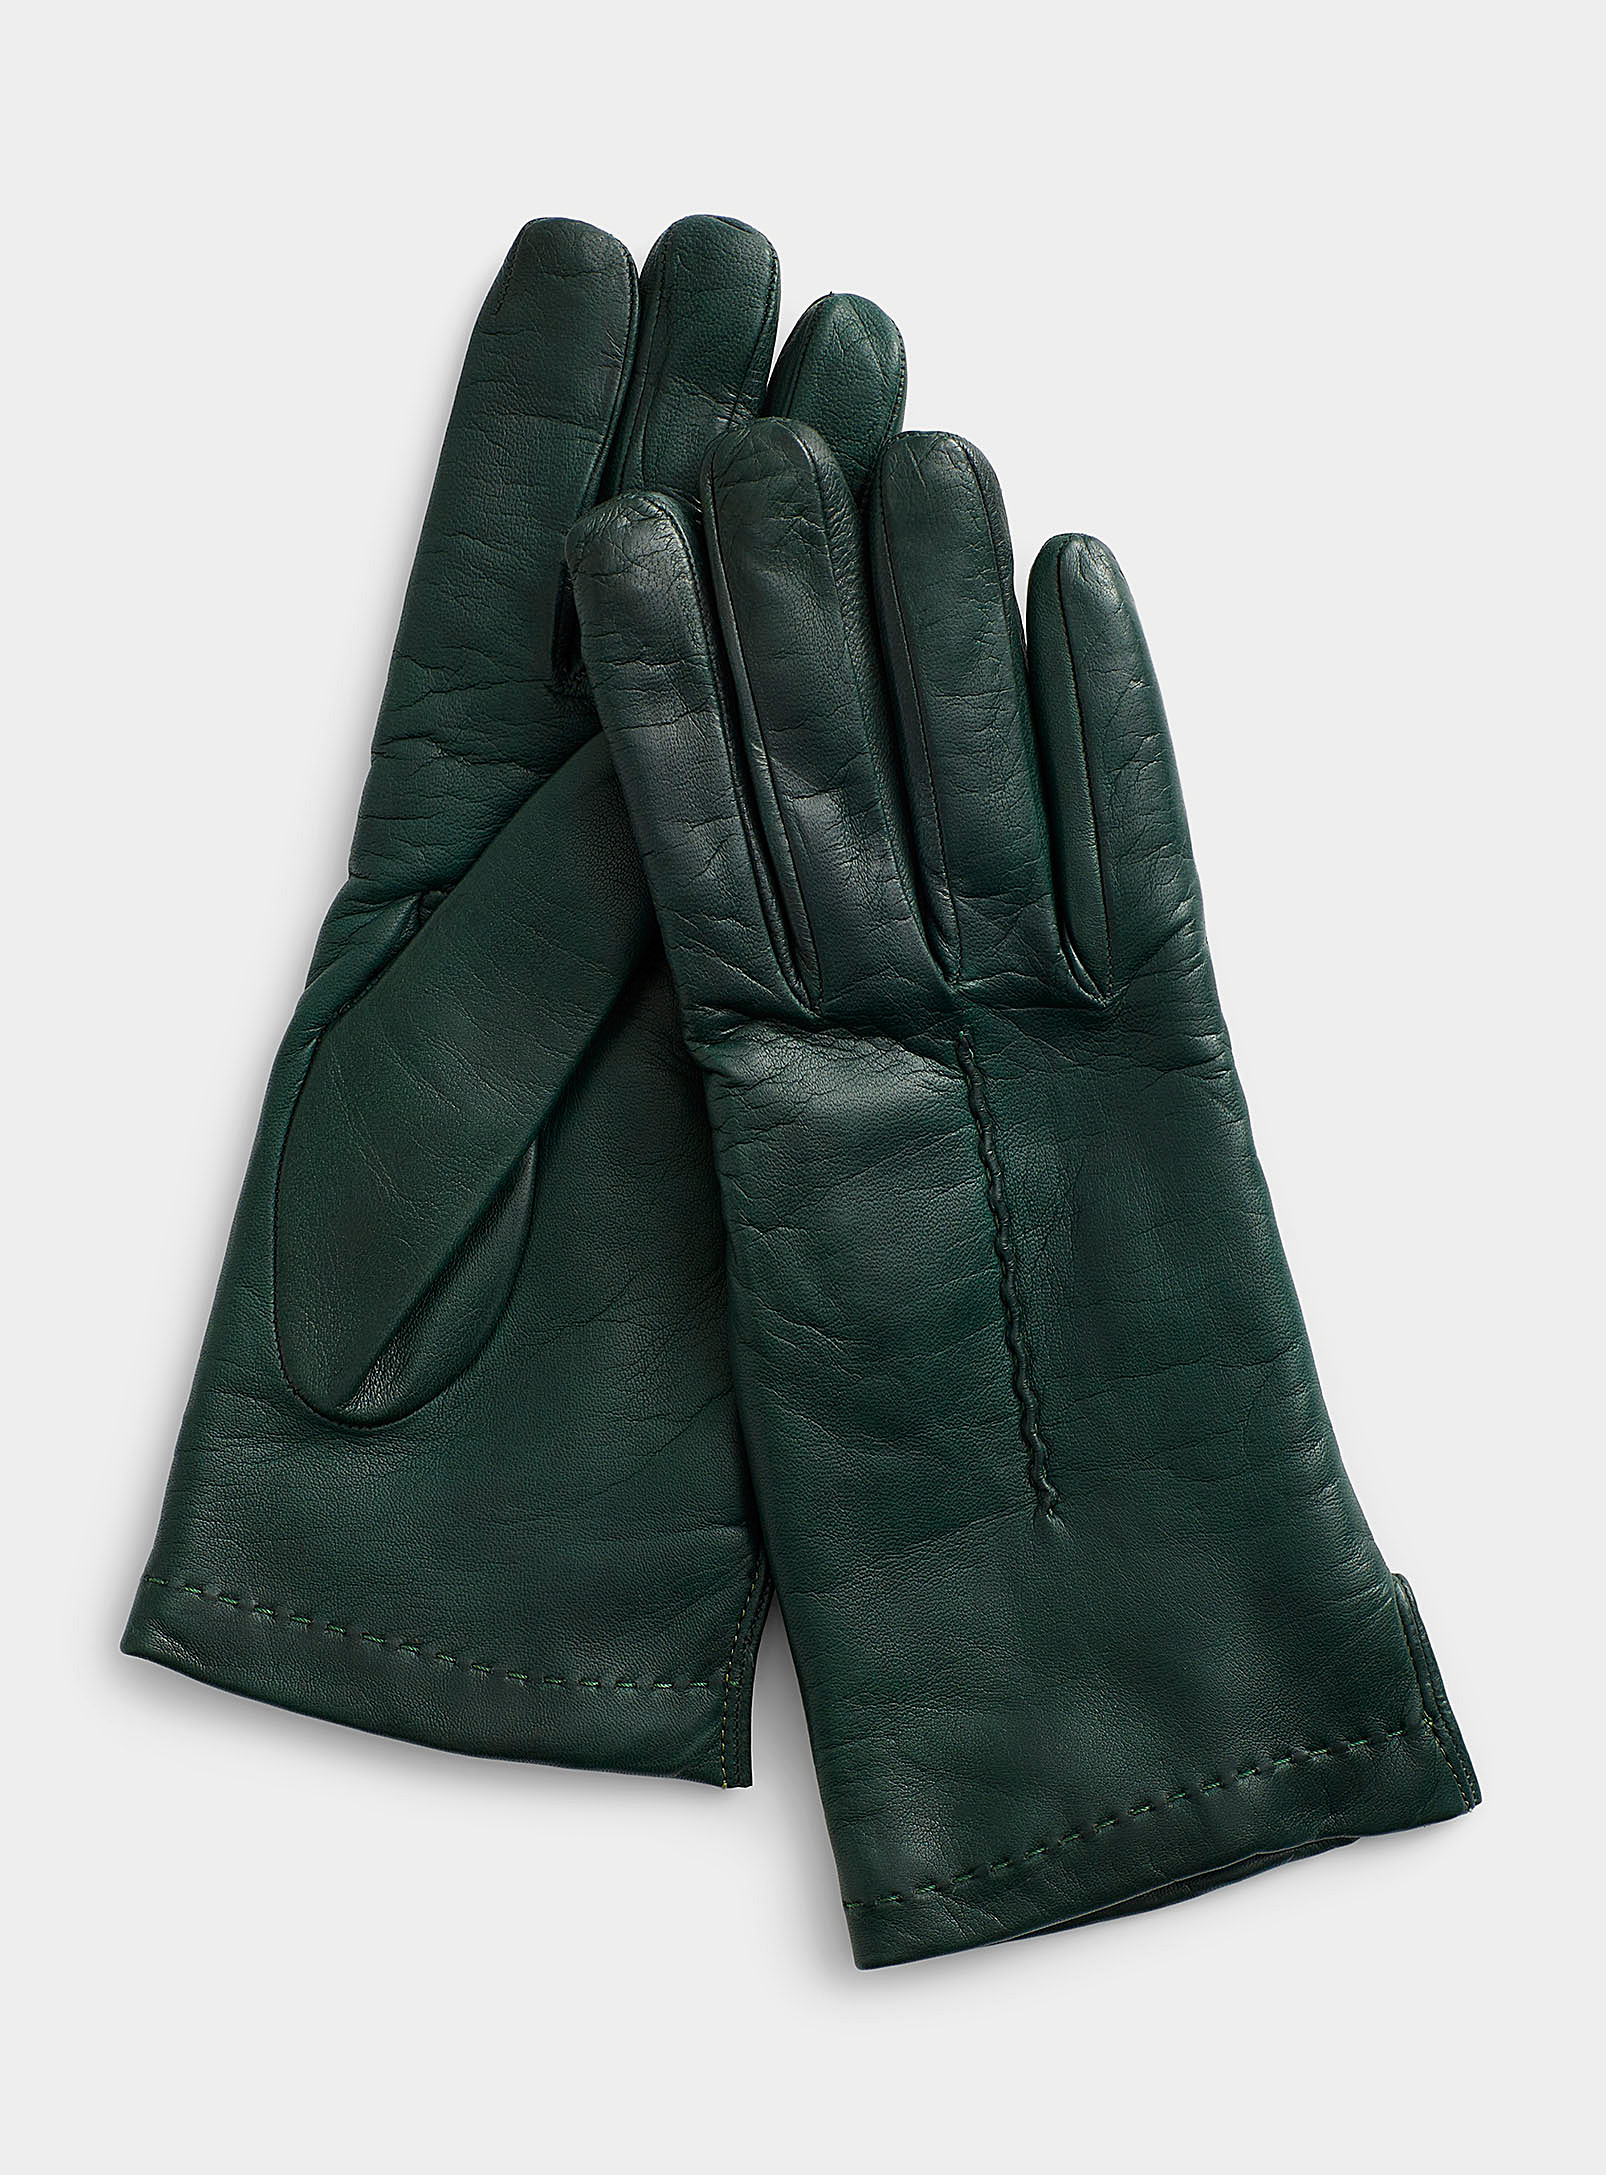 Simons - Women's Seamed leather gloves